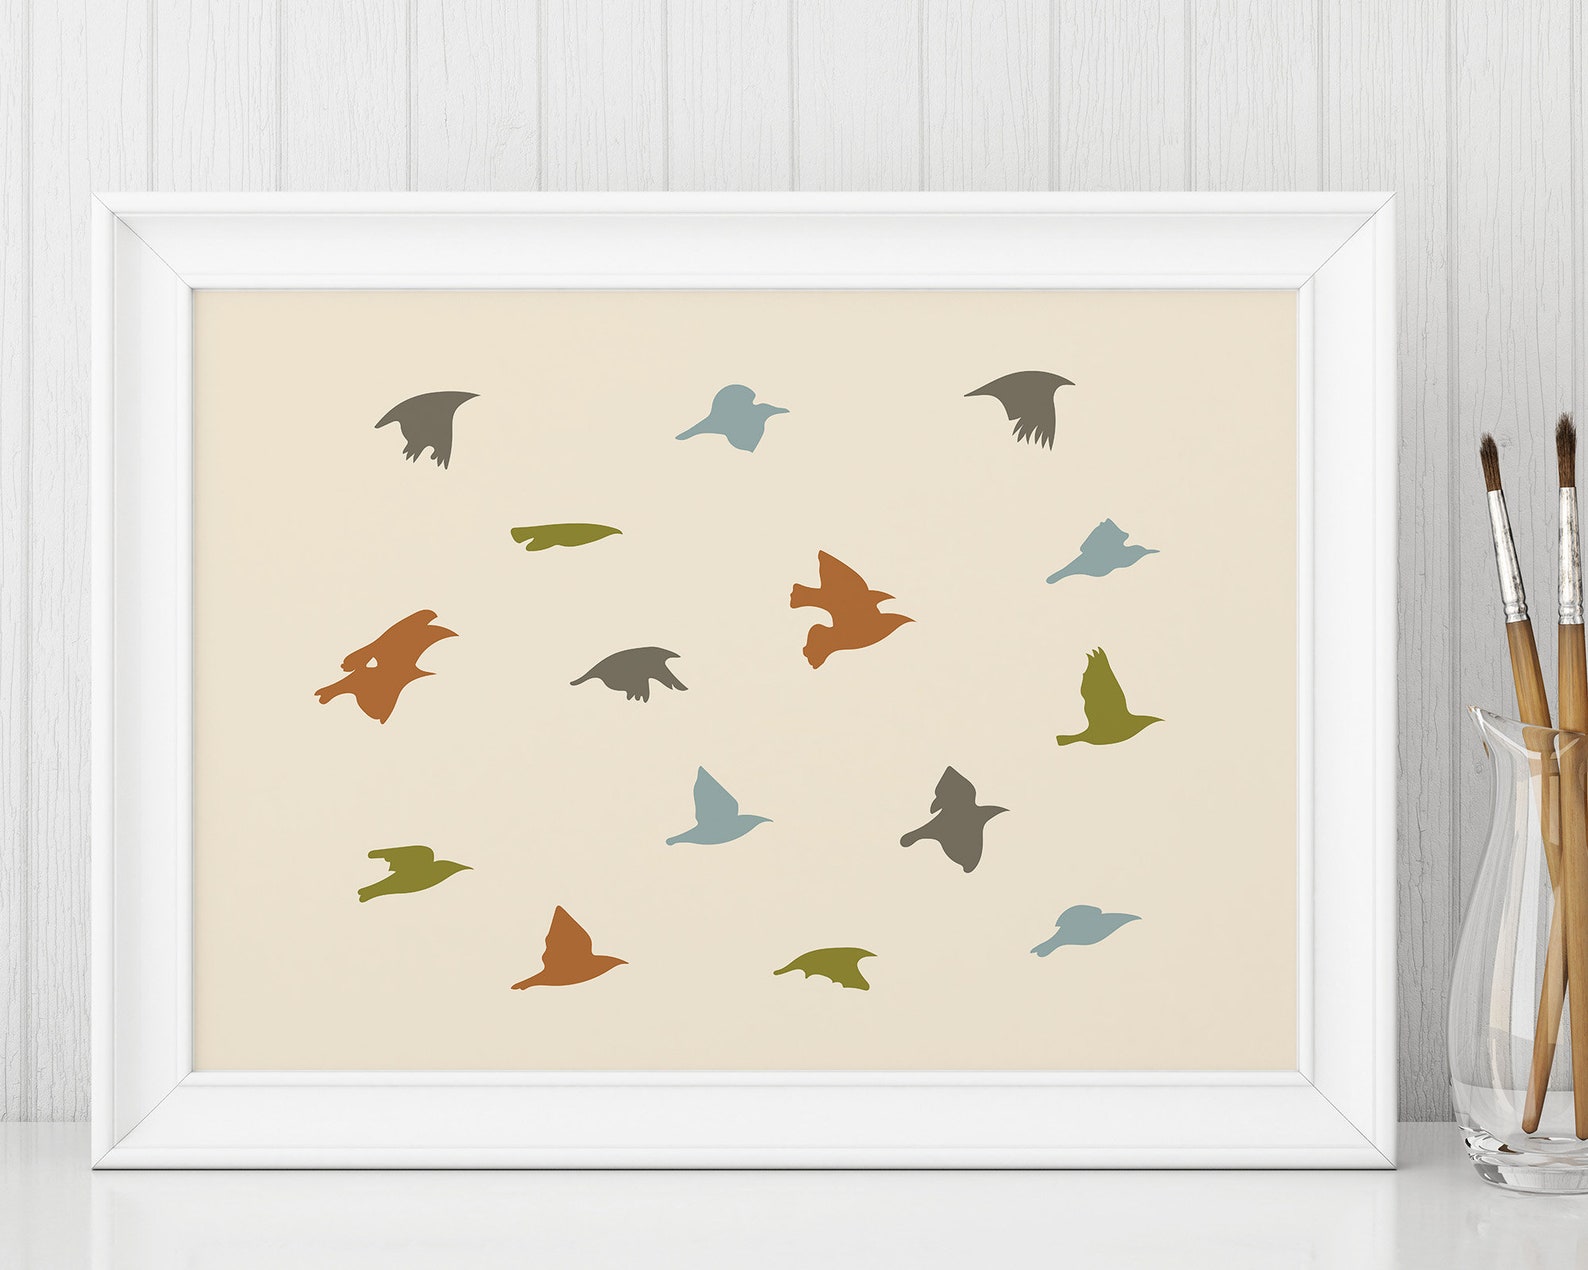 Abstract Birds in Flight Printable Wall Art Digital Download - Etsy